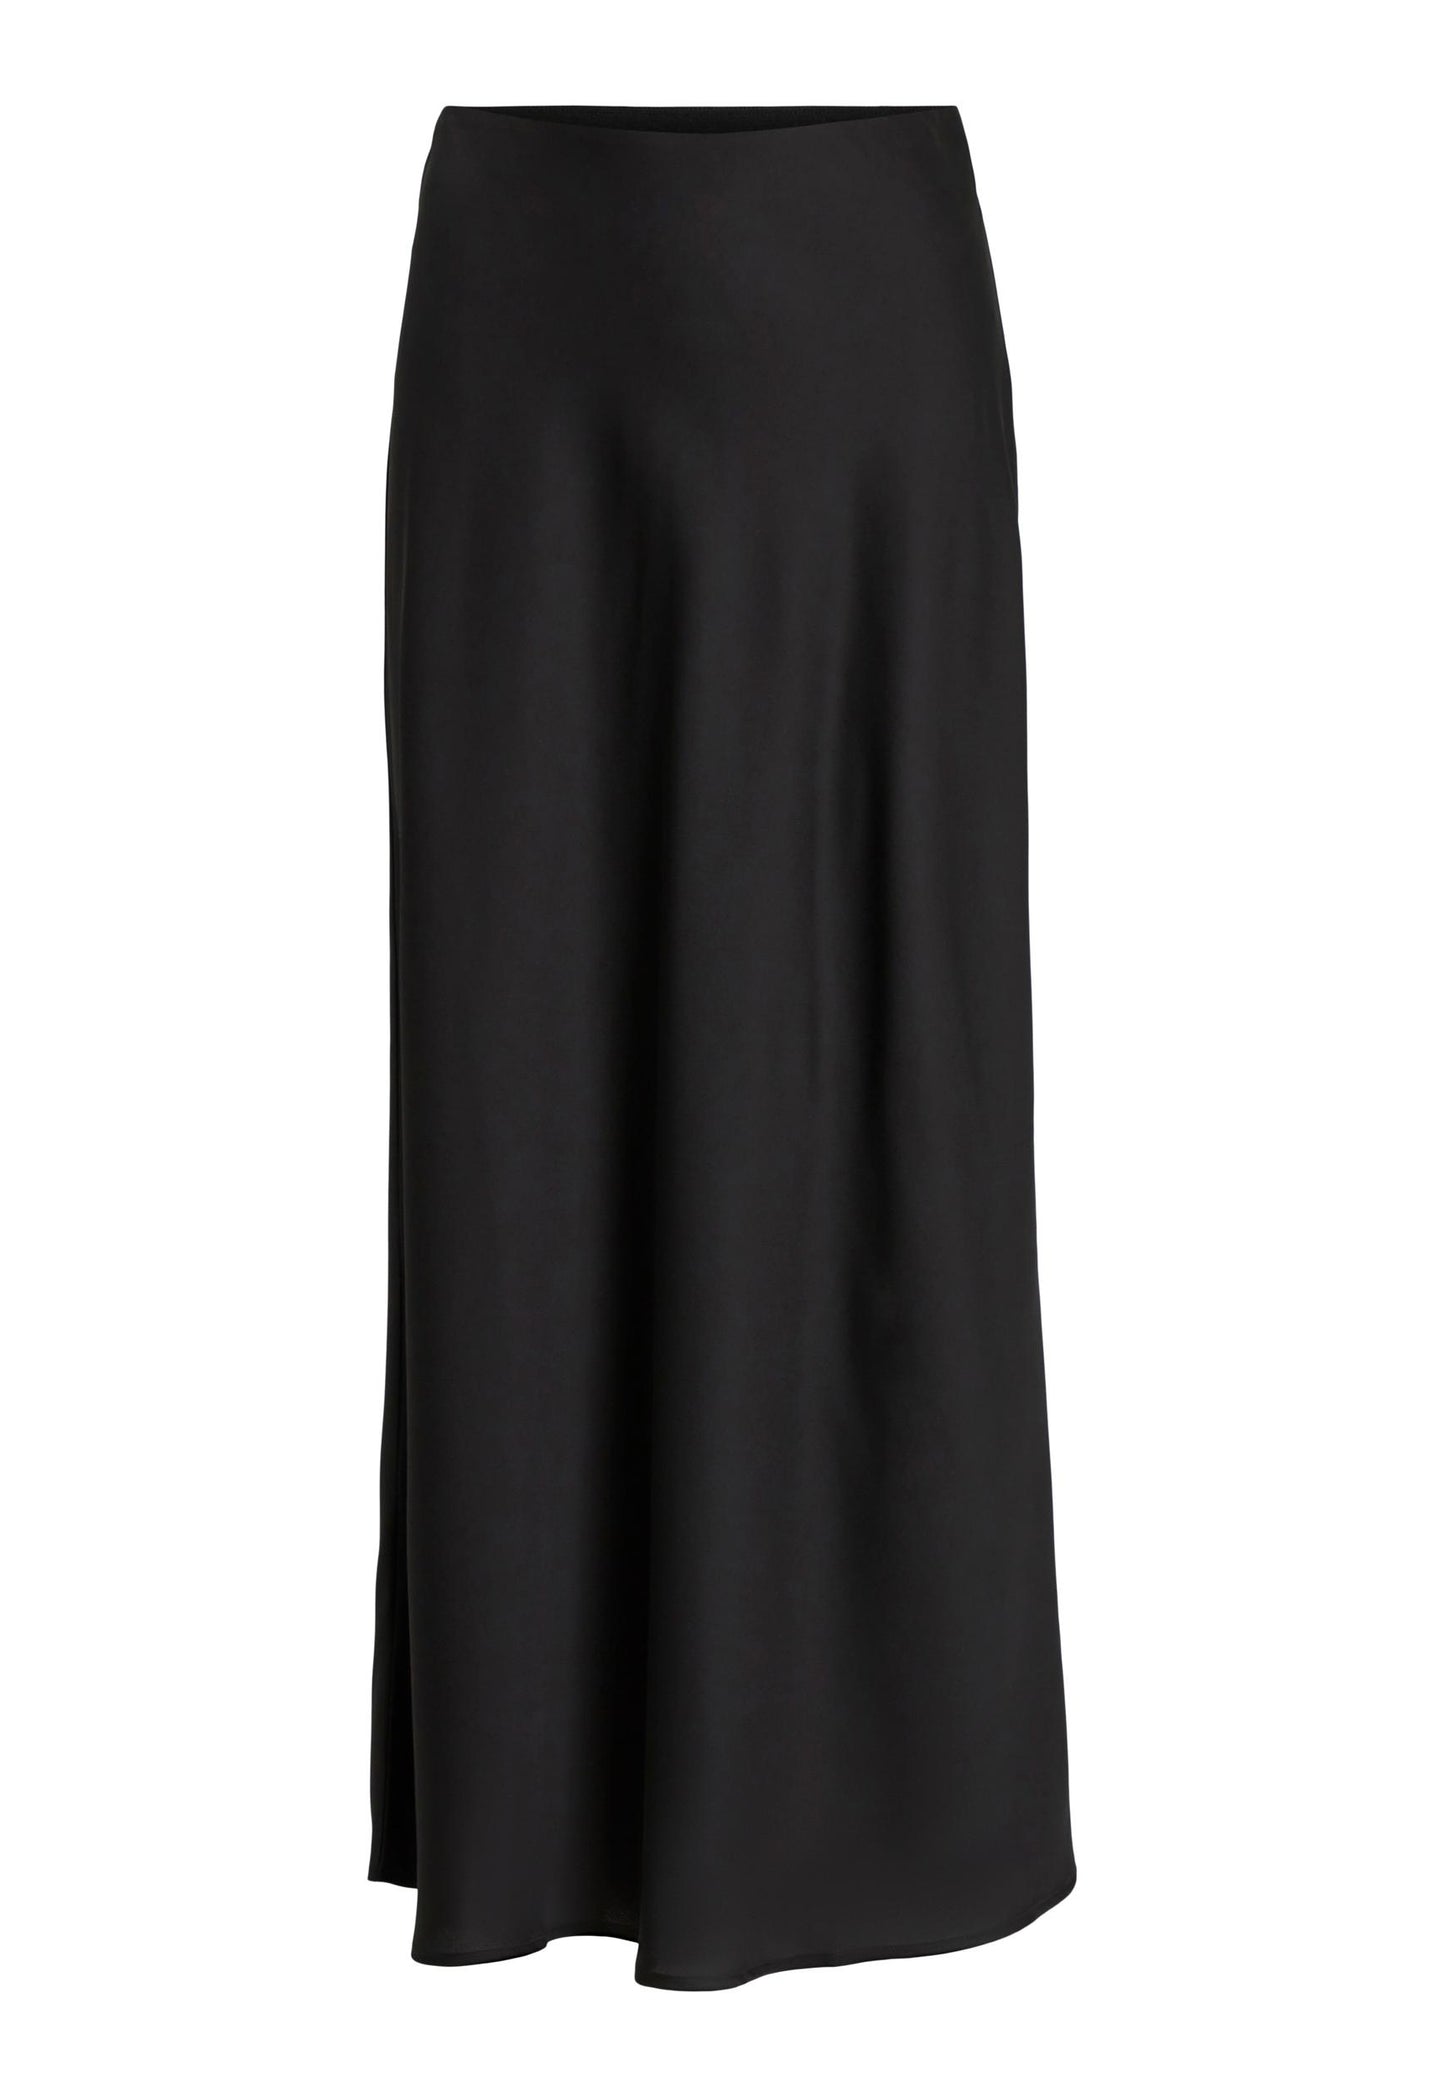 
                  
                    VILA Ellete Satin Slip Midi Skirt in Black - One Nation Clothing
                  
                